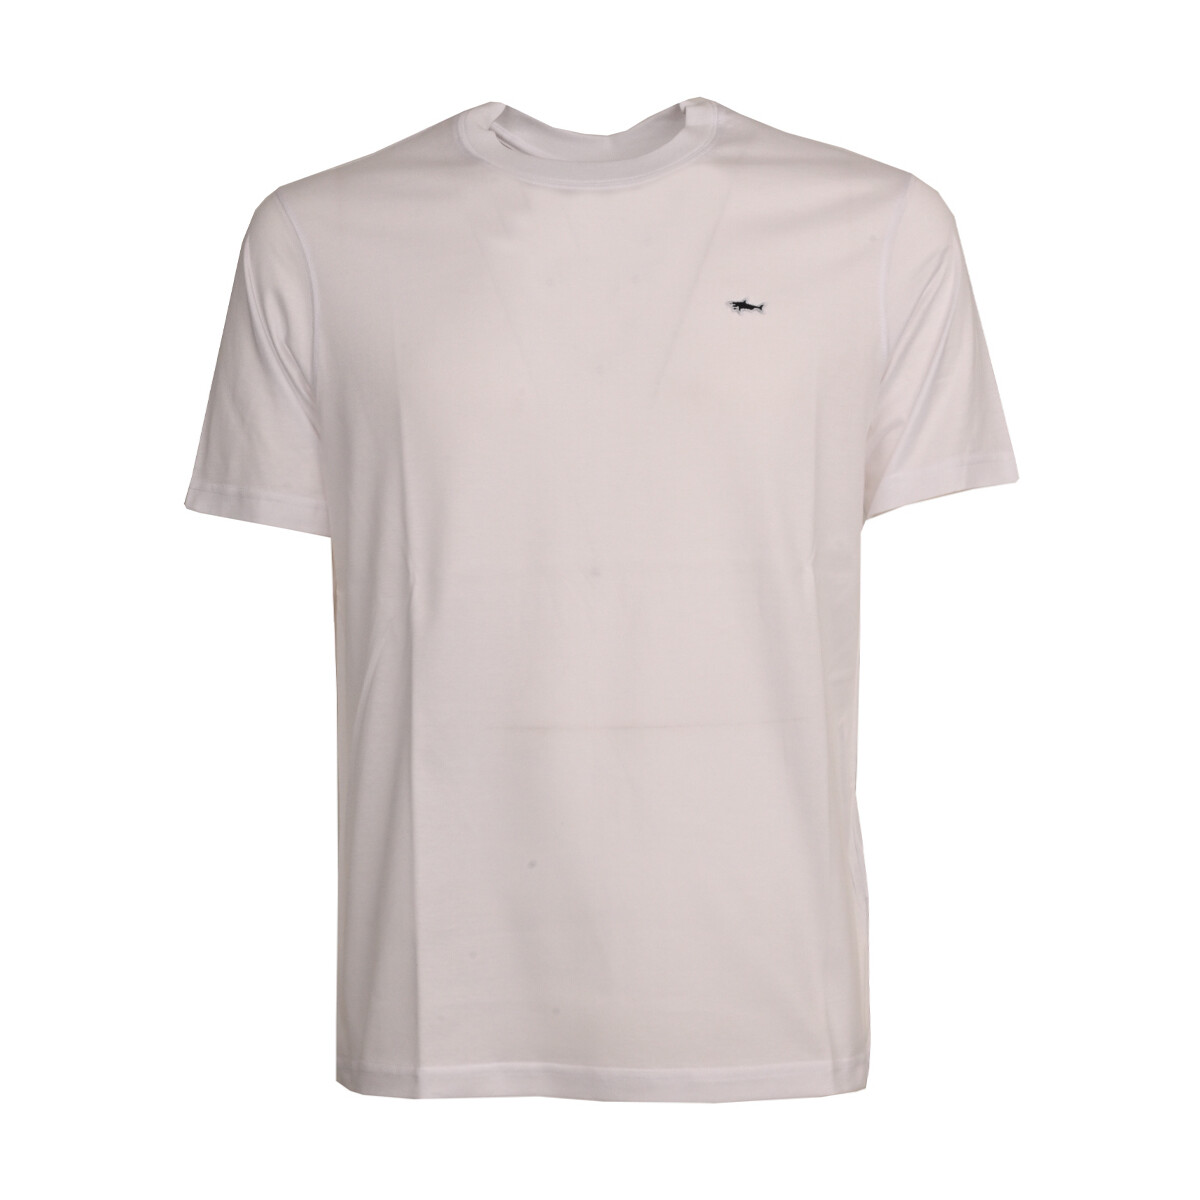 Vêtements Homme T-shirts manches courtes Paul & Shark c0p1092-10 Blanc